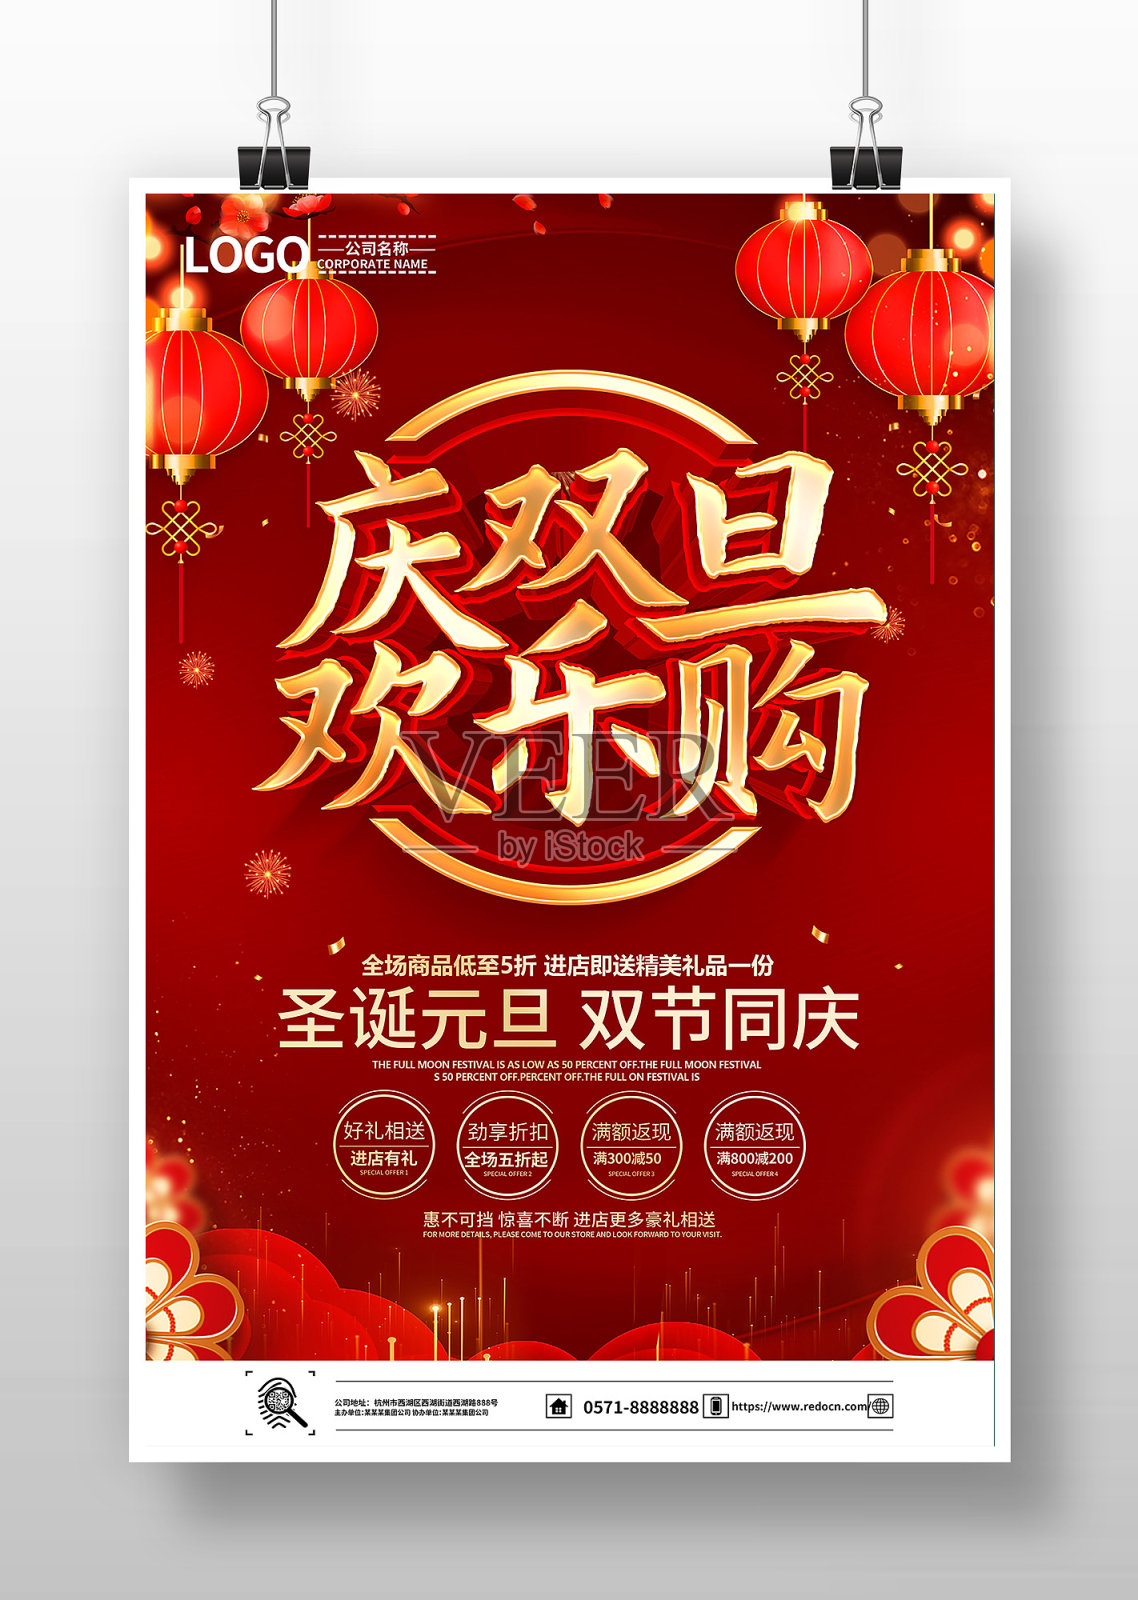 红色喜庆庆双旦欢乐购海报设计模板素材